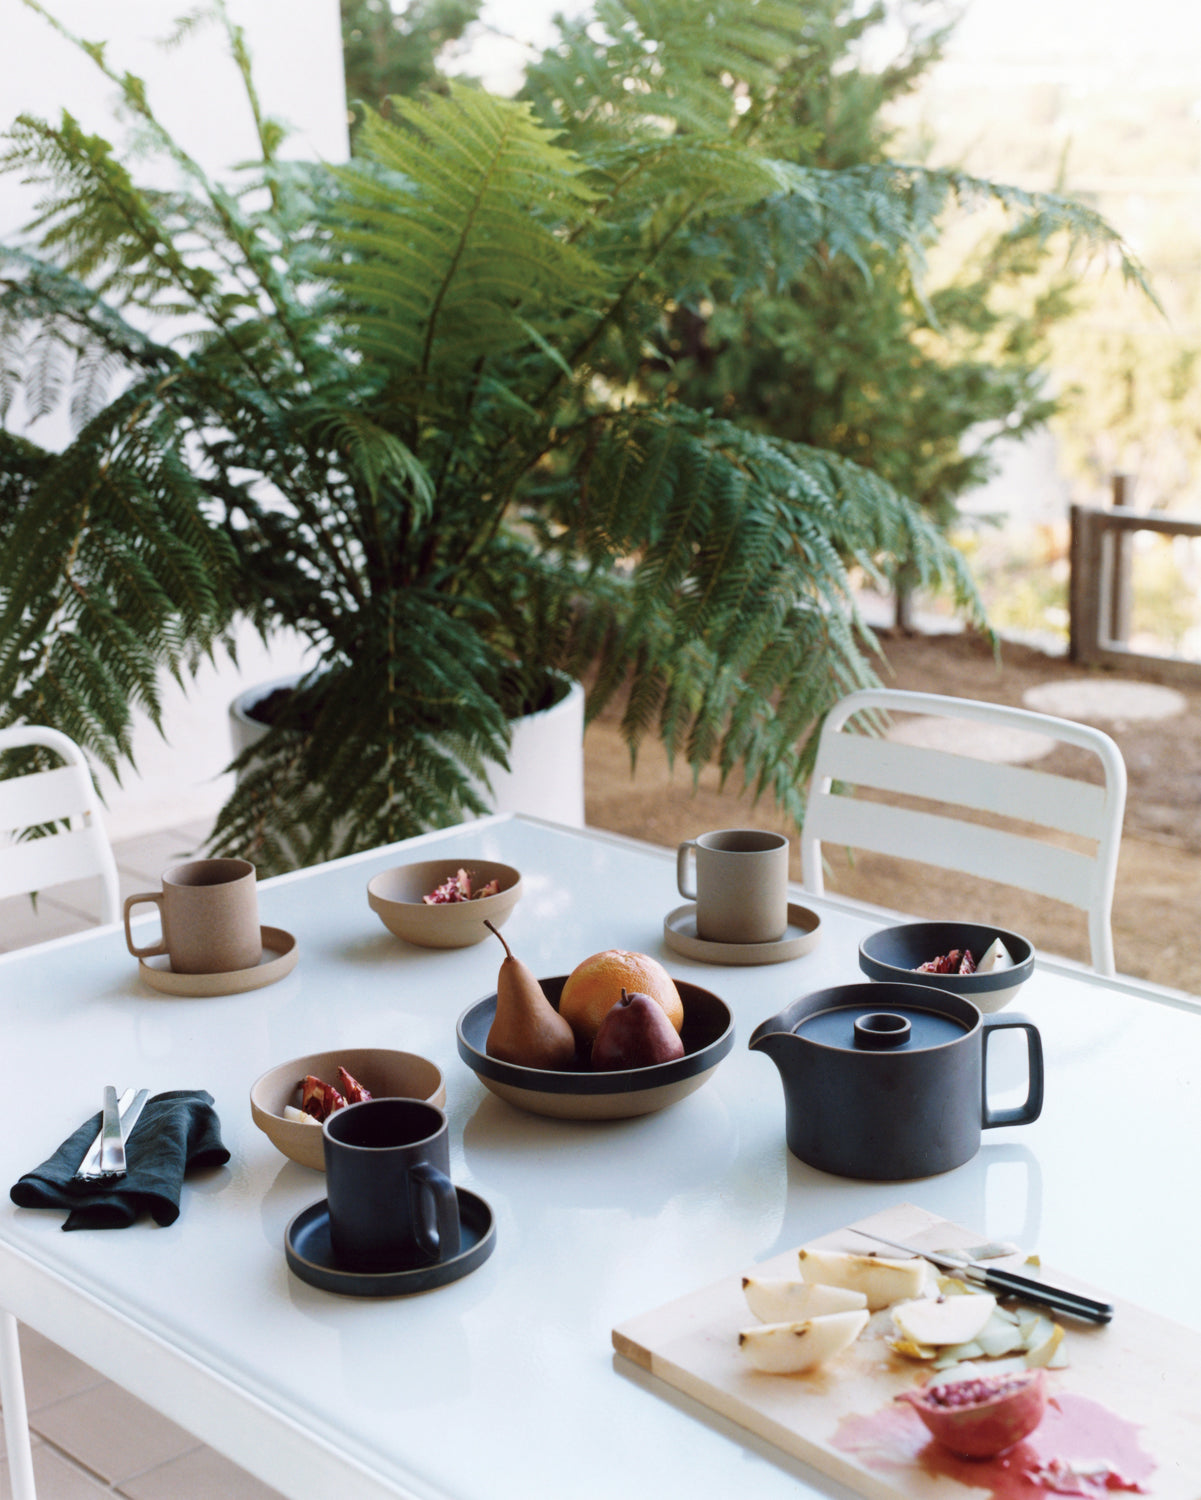 Hasami Porcelain Plate 18.5cm - Black - simplebeautifulthings